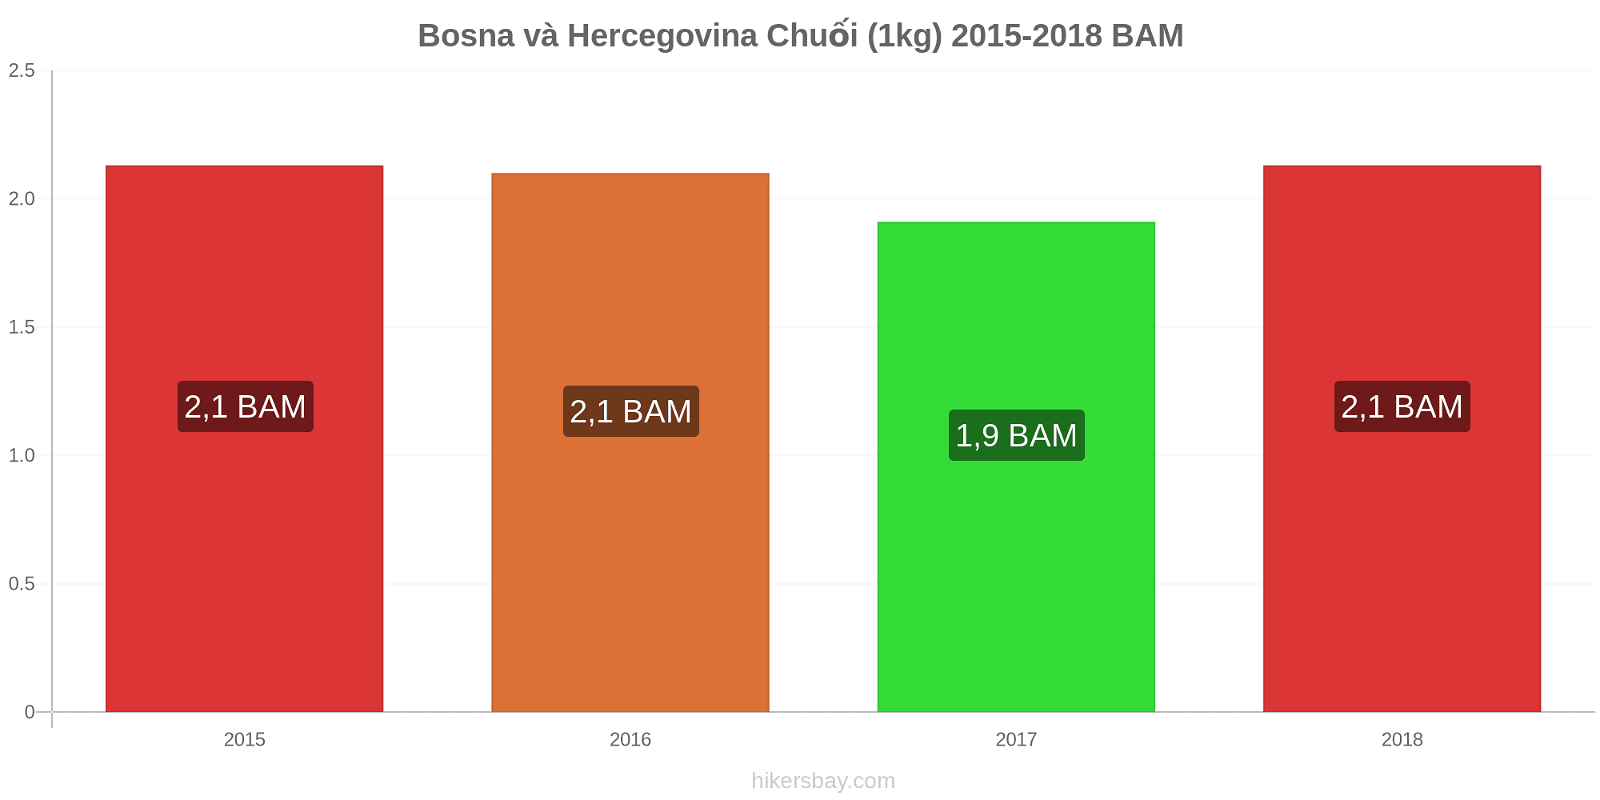 Bosna và Hercegovina thay đổi giá cả Chuối (1kg) hikersbay.com